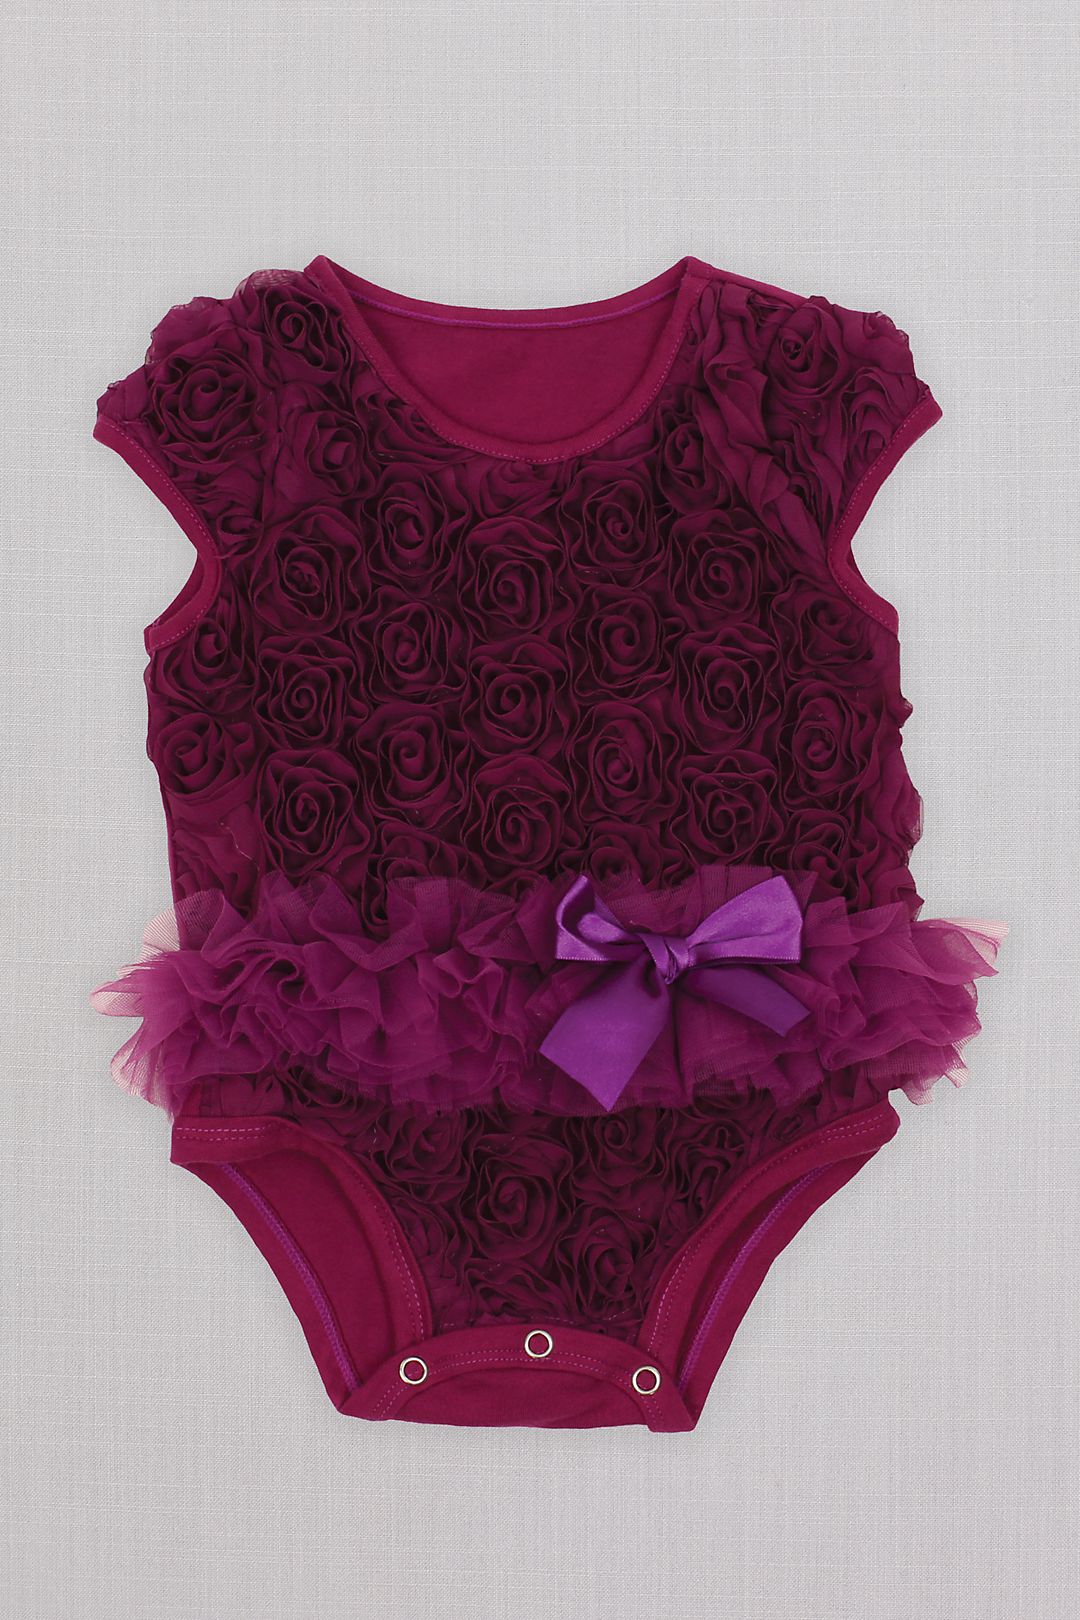 Ribbon Rosette Infant Flower Girl Tutu Bodysuit Image 1